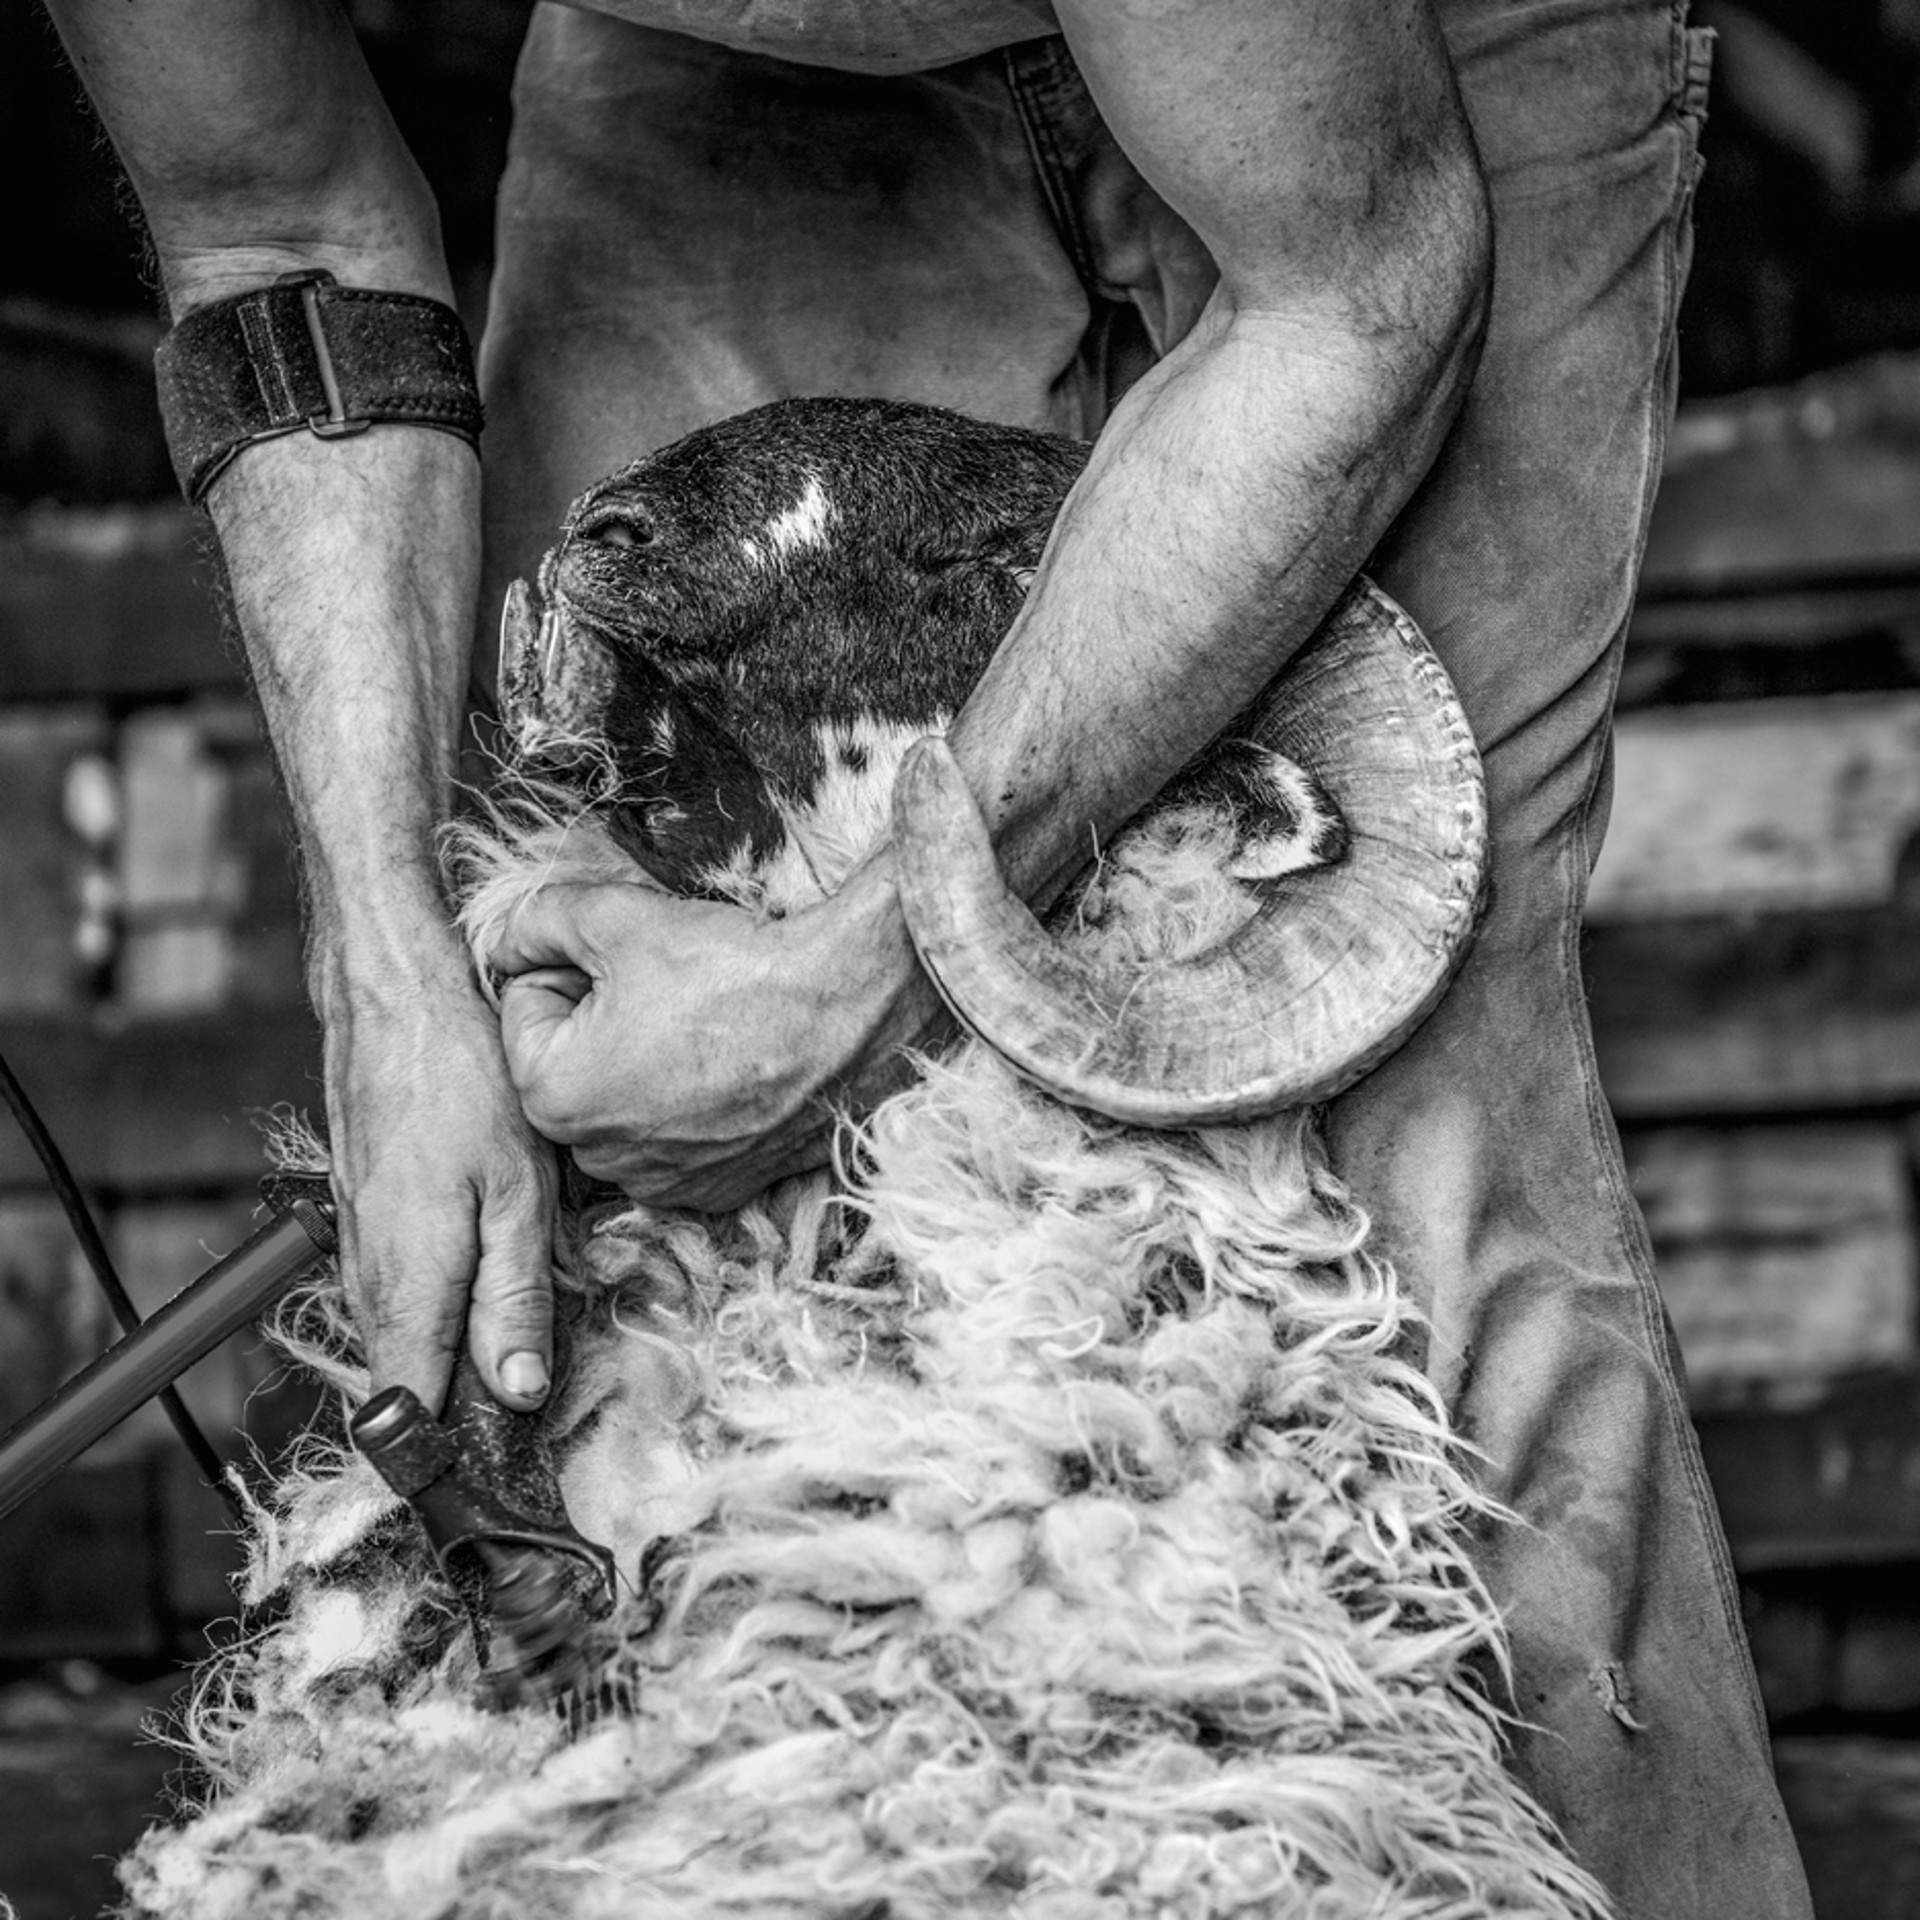 Shearing by Nina Fuller